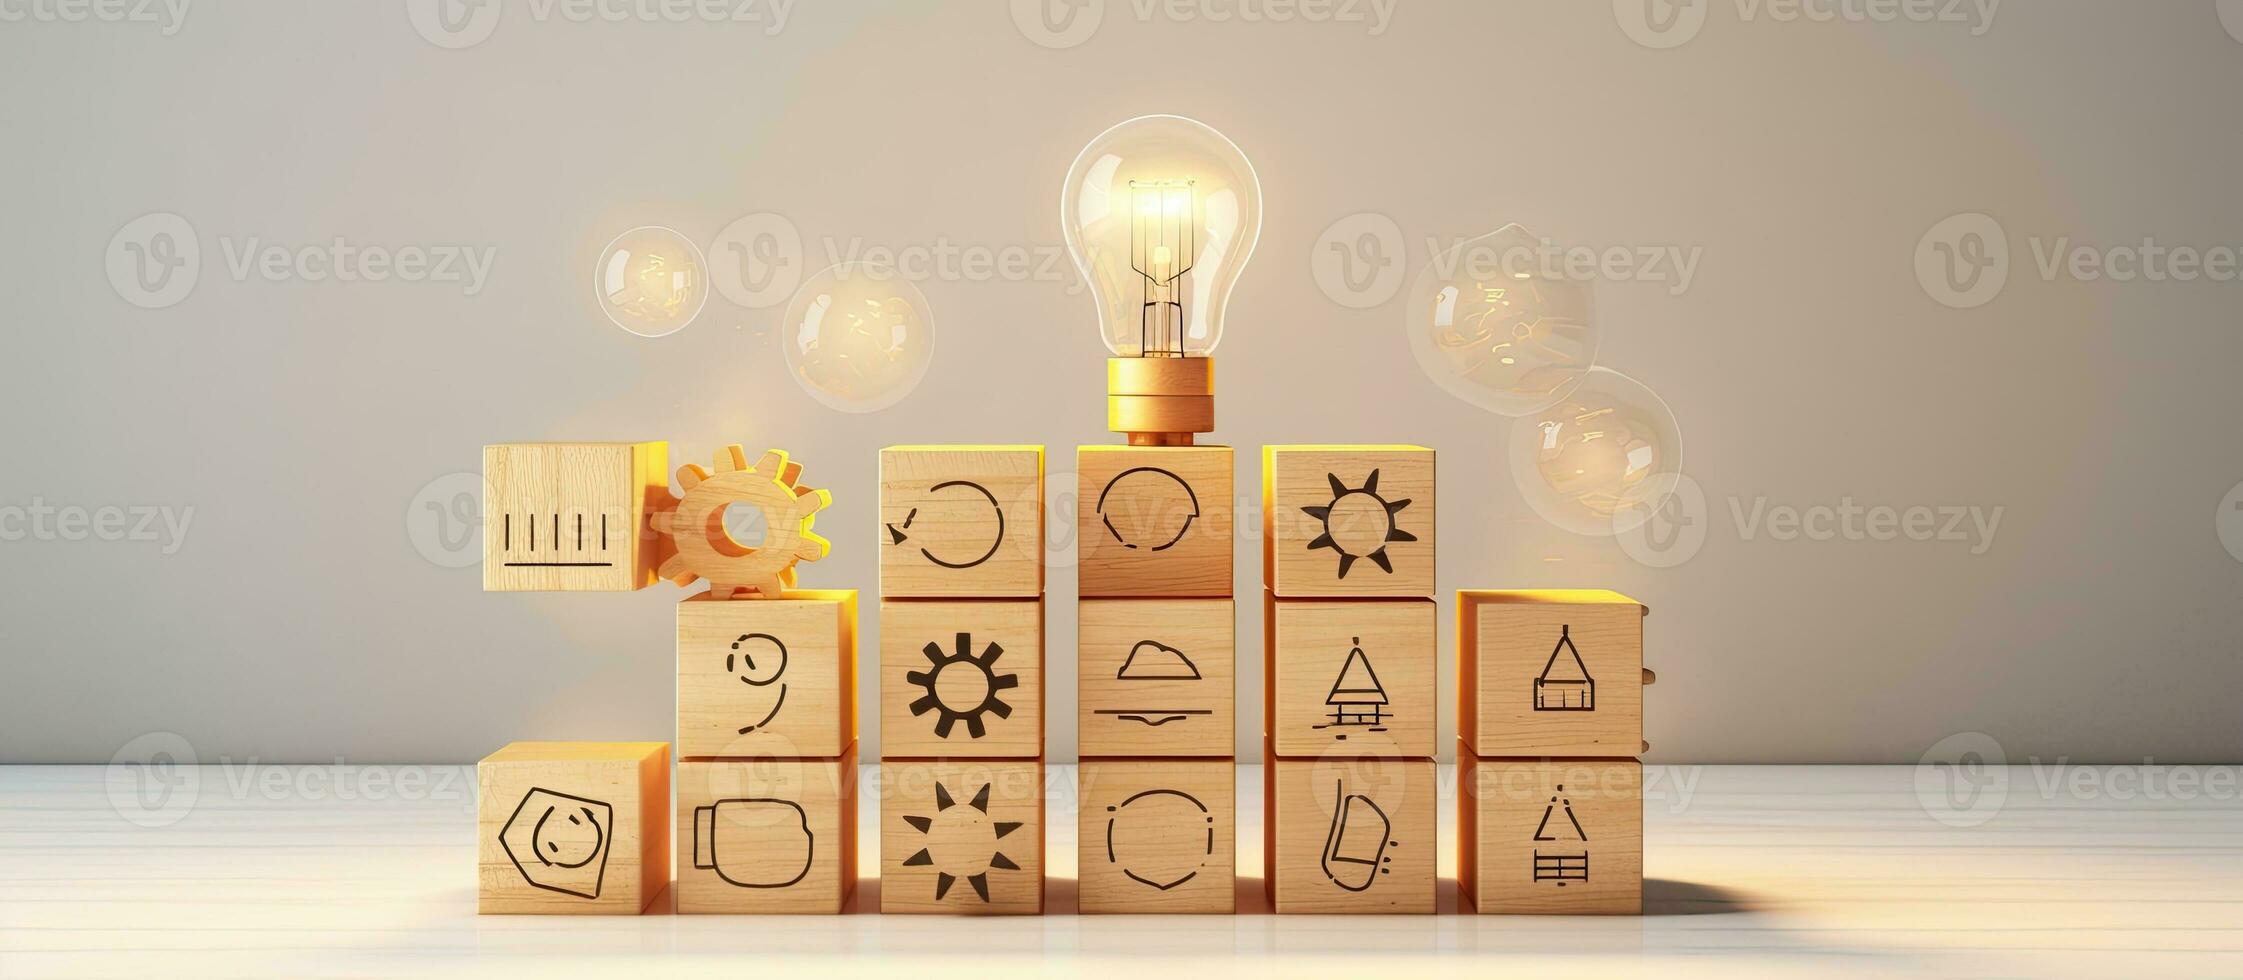 begrepp av kreativ tänkande och innovation för företag tillväxt representerade förbi trä- kub block med ljus Glödlampa och cykel ikoner på en rena bakgrund med spa foto